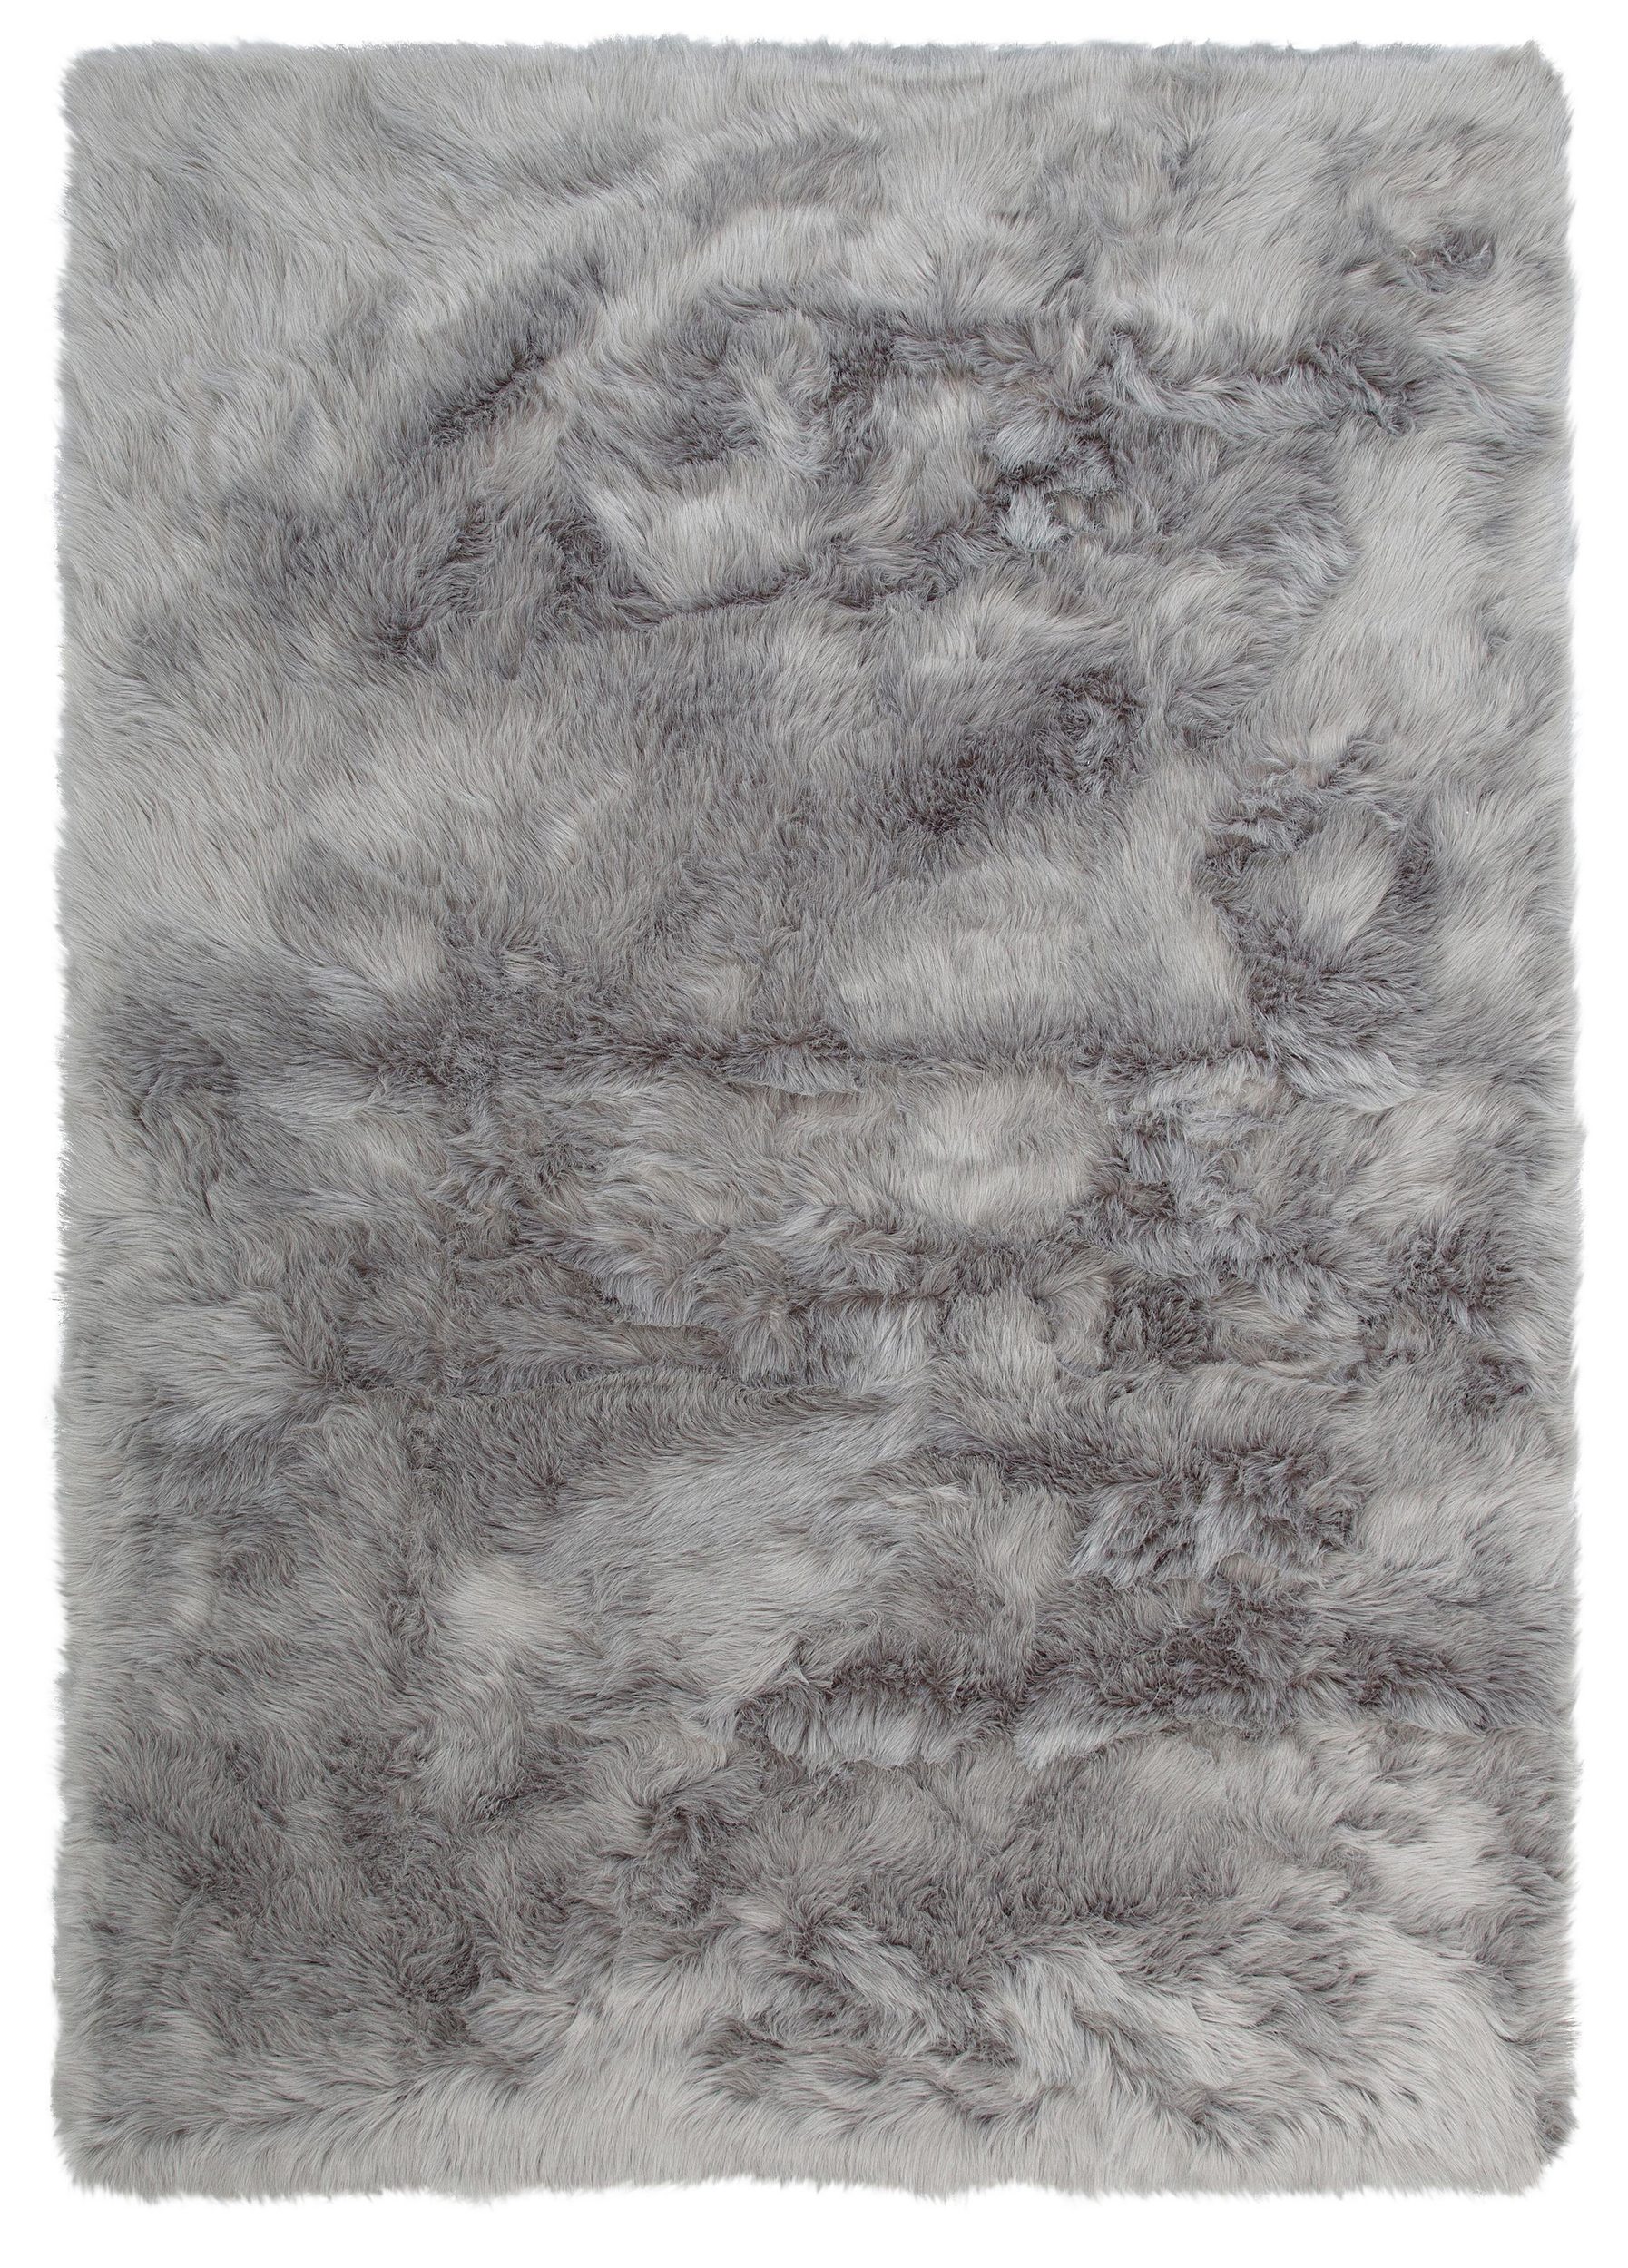 From on Infrared Covor Home affaire Valeria, blana artificiala, gri, 160/230 cm, oferit de  HOBBY MOBILA